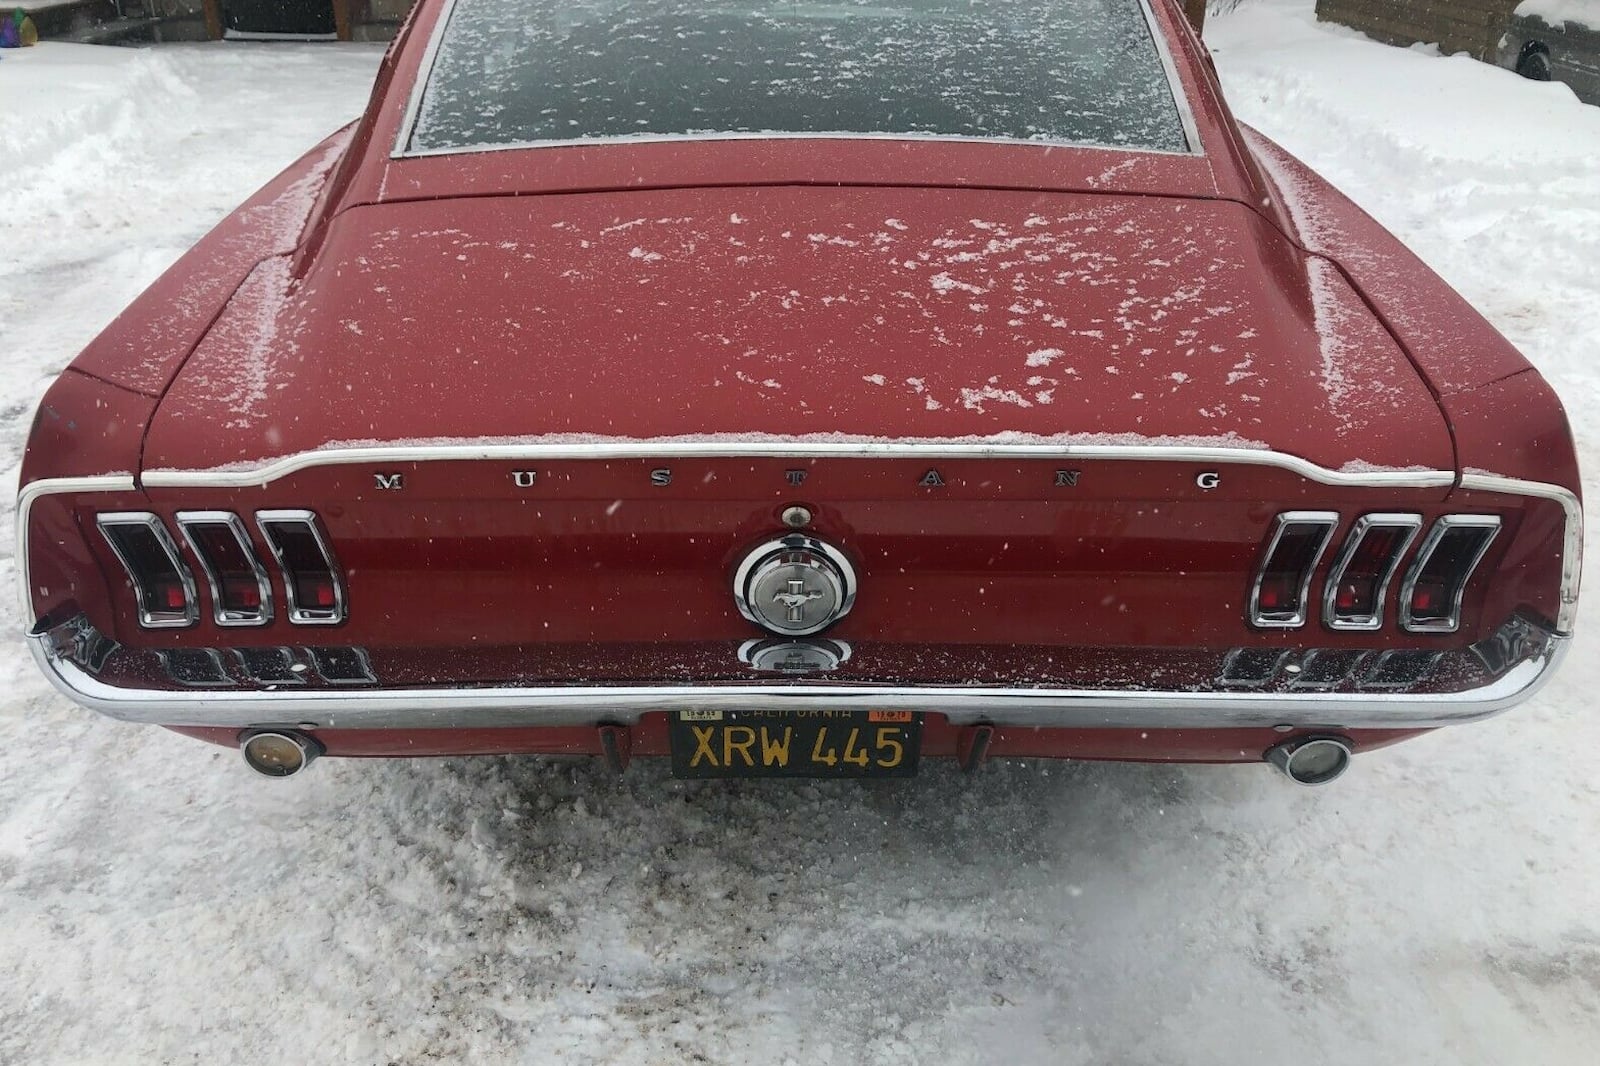 40 évre elrejtették a világ elől ezt a Mustangot 5